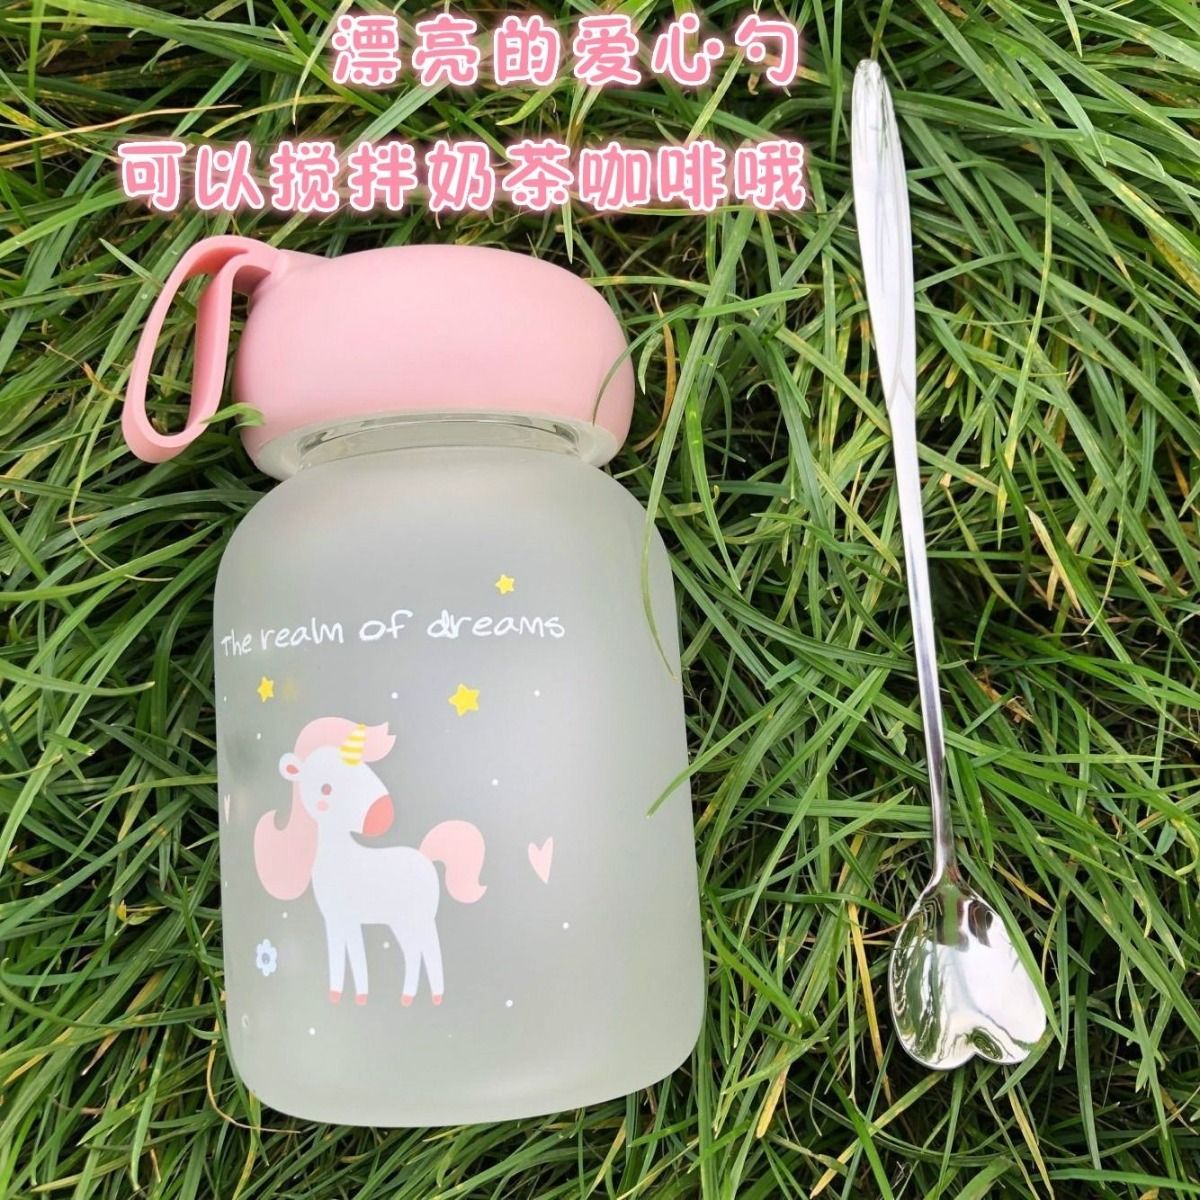 【磨砂玻璃杯】可爱水杯男女学生韩版便携儿童杯子清新茶杯创意随手杯